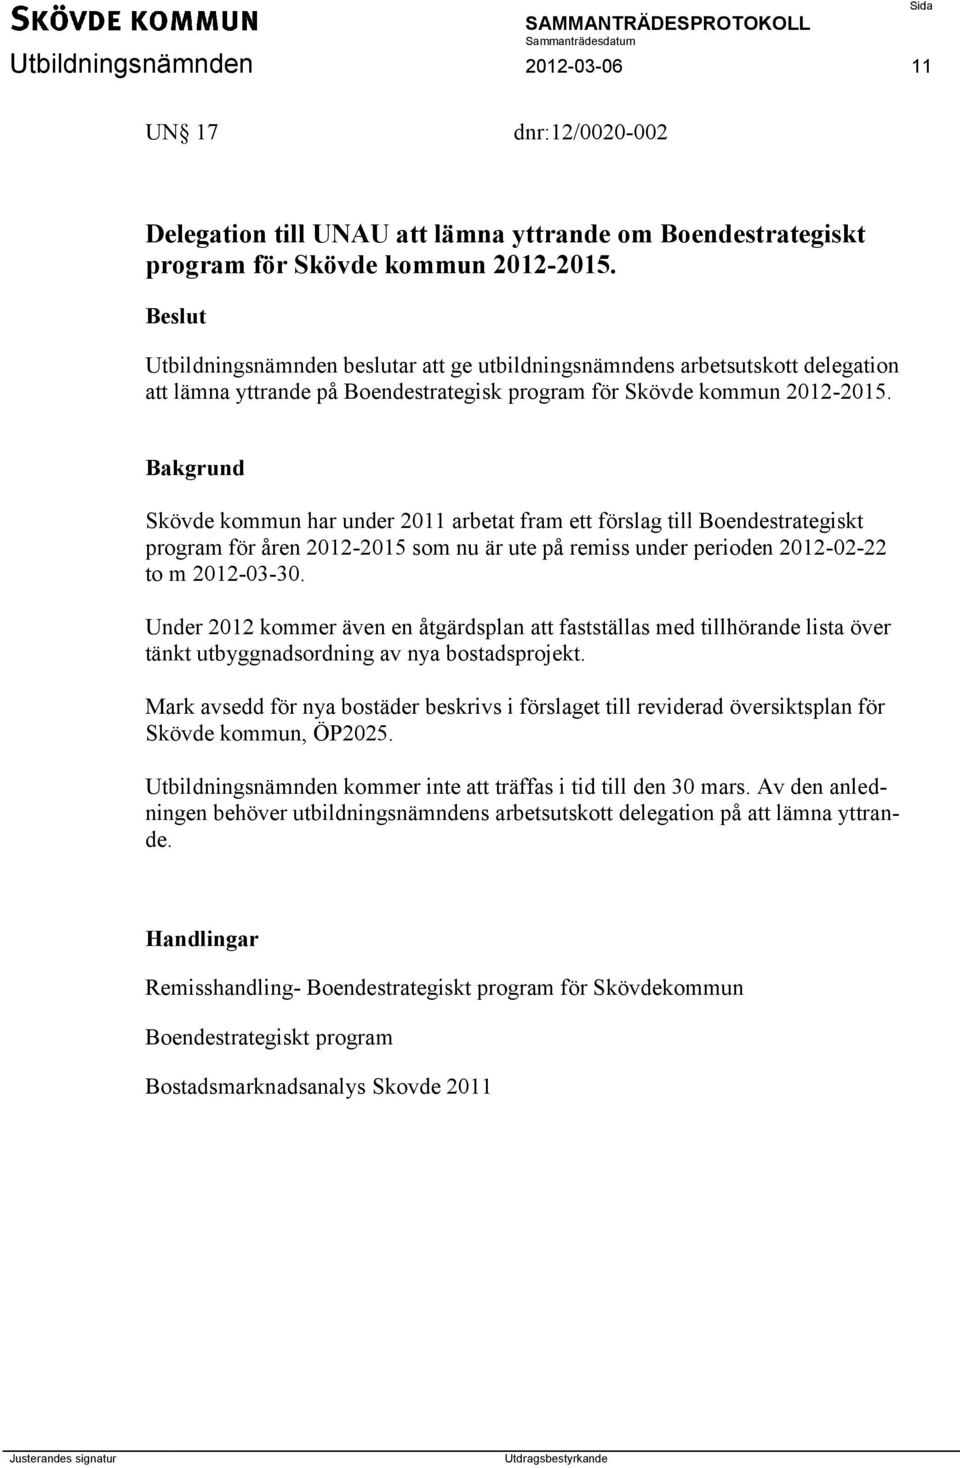 Skövde kommun har under 2011 arbetat fram ett förslag till Boendestrategiskt program för åren 2012-2015 som nu är ute på remiss under perioden 2012-02-22 to m 2012-03-30.